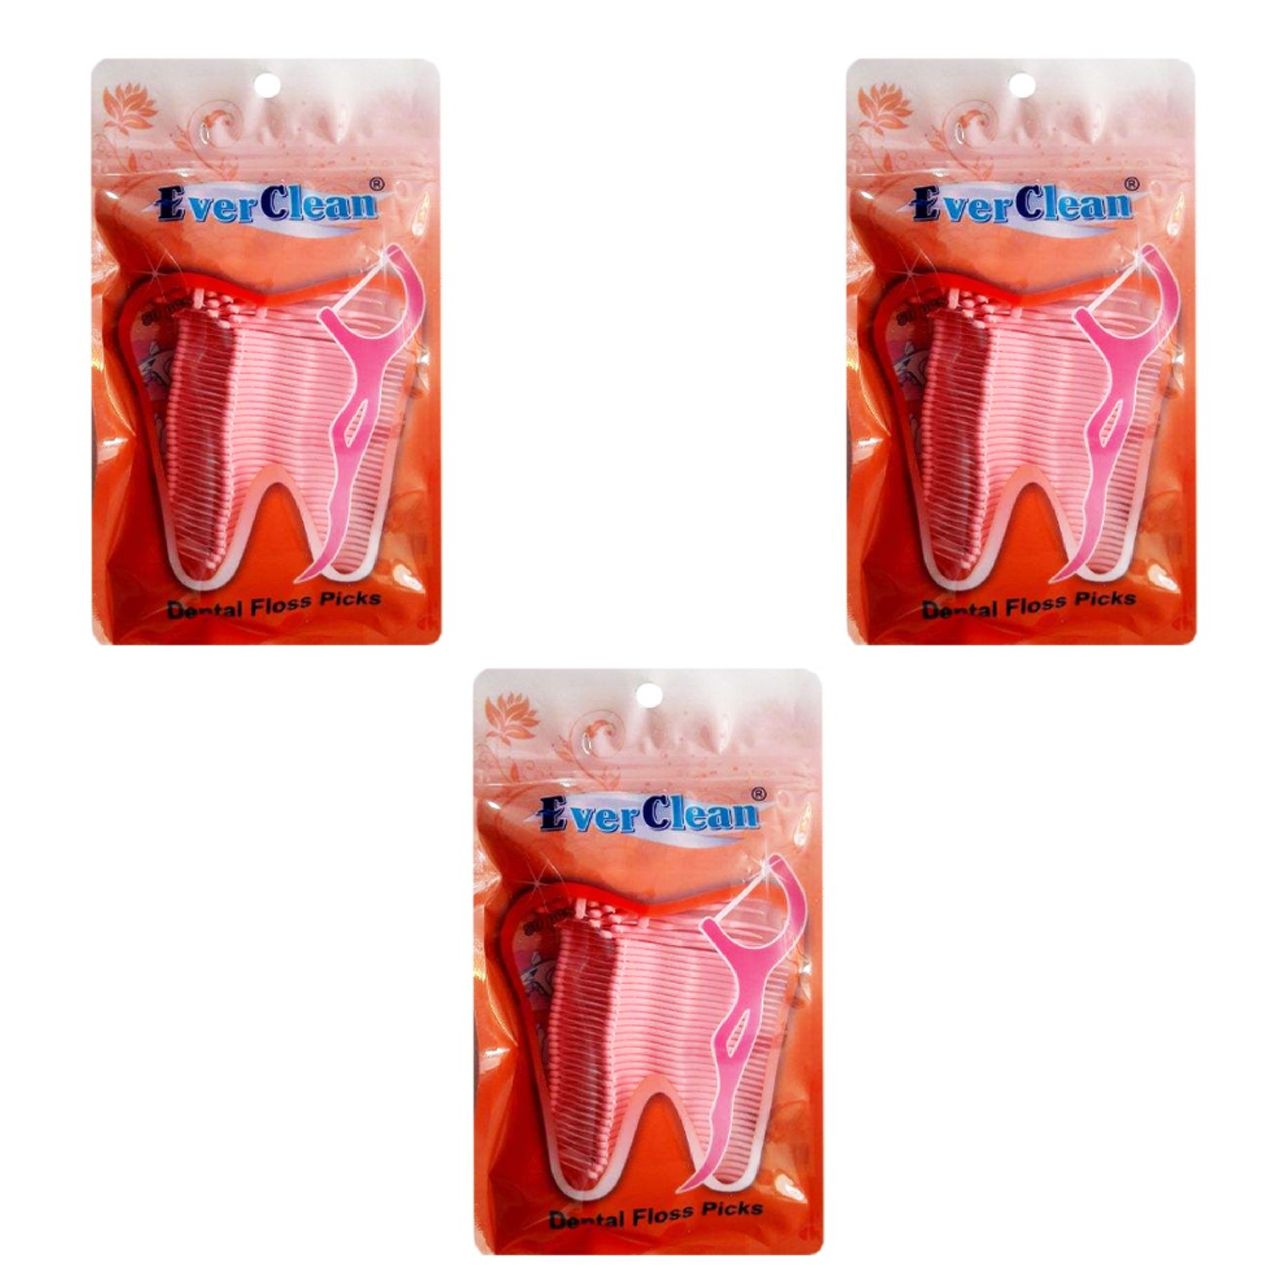 نخ دندان اورکلین کد 022 بسته 3 عددی -  - 1